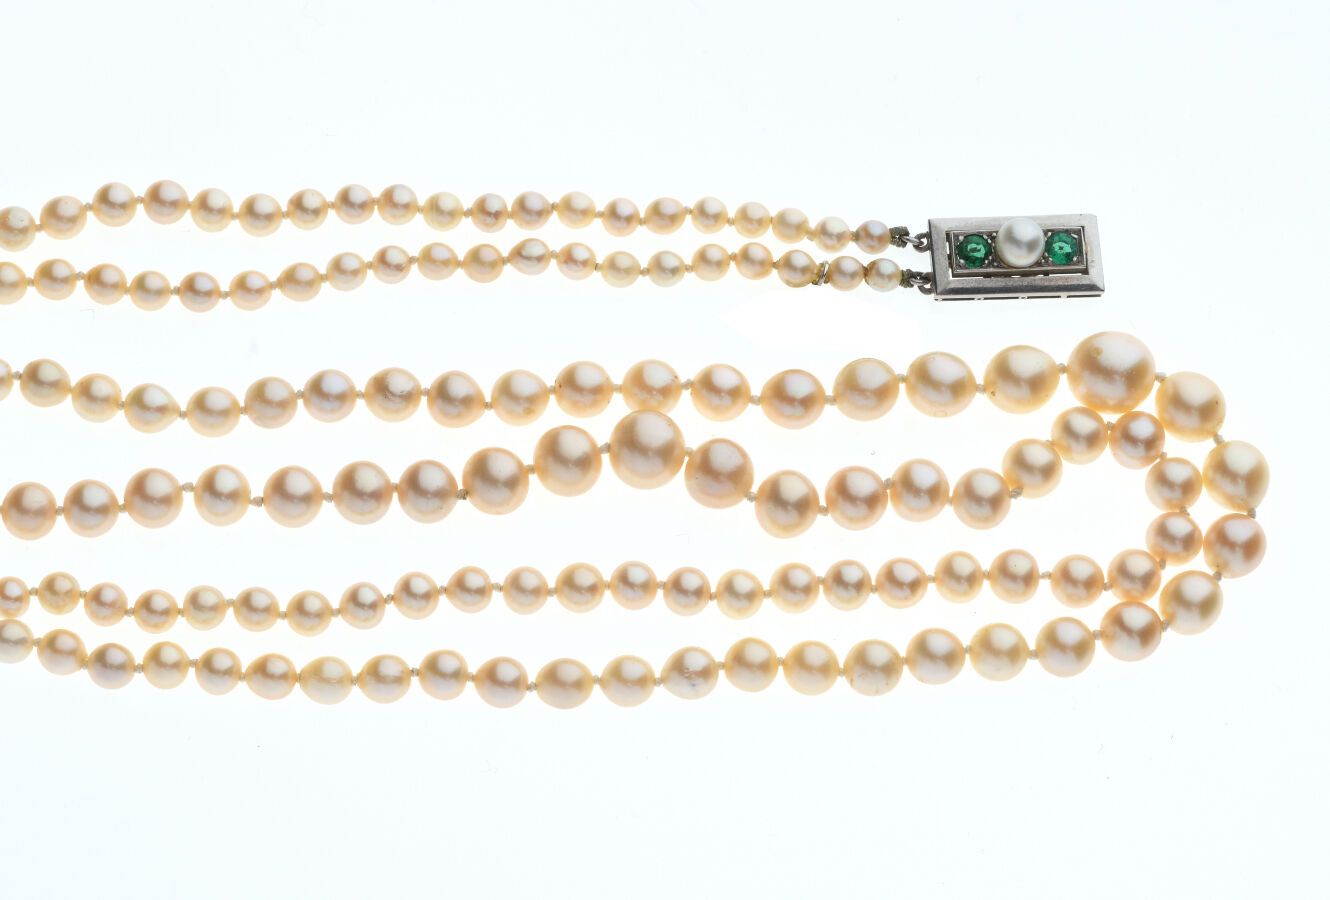 Null 铂金850/°，黄金750/°，银800/°的珍珠项链，大部分可能是精品，两排3.5至8.4毫米的珍珠。 长48厘米。毛重：38.8克。